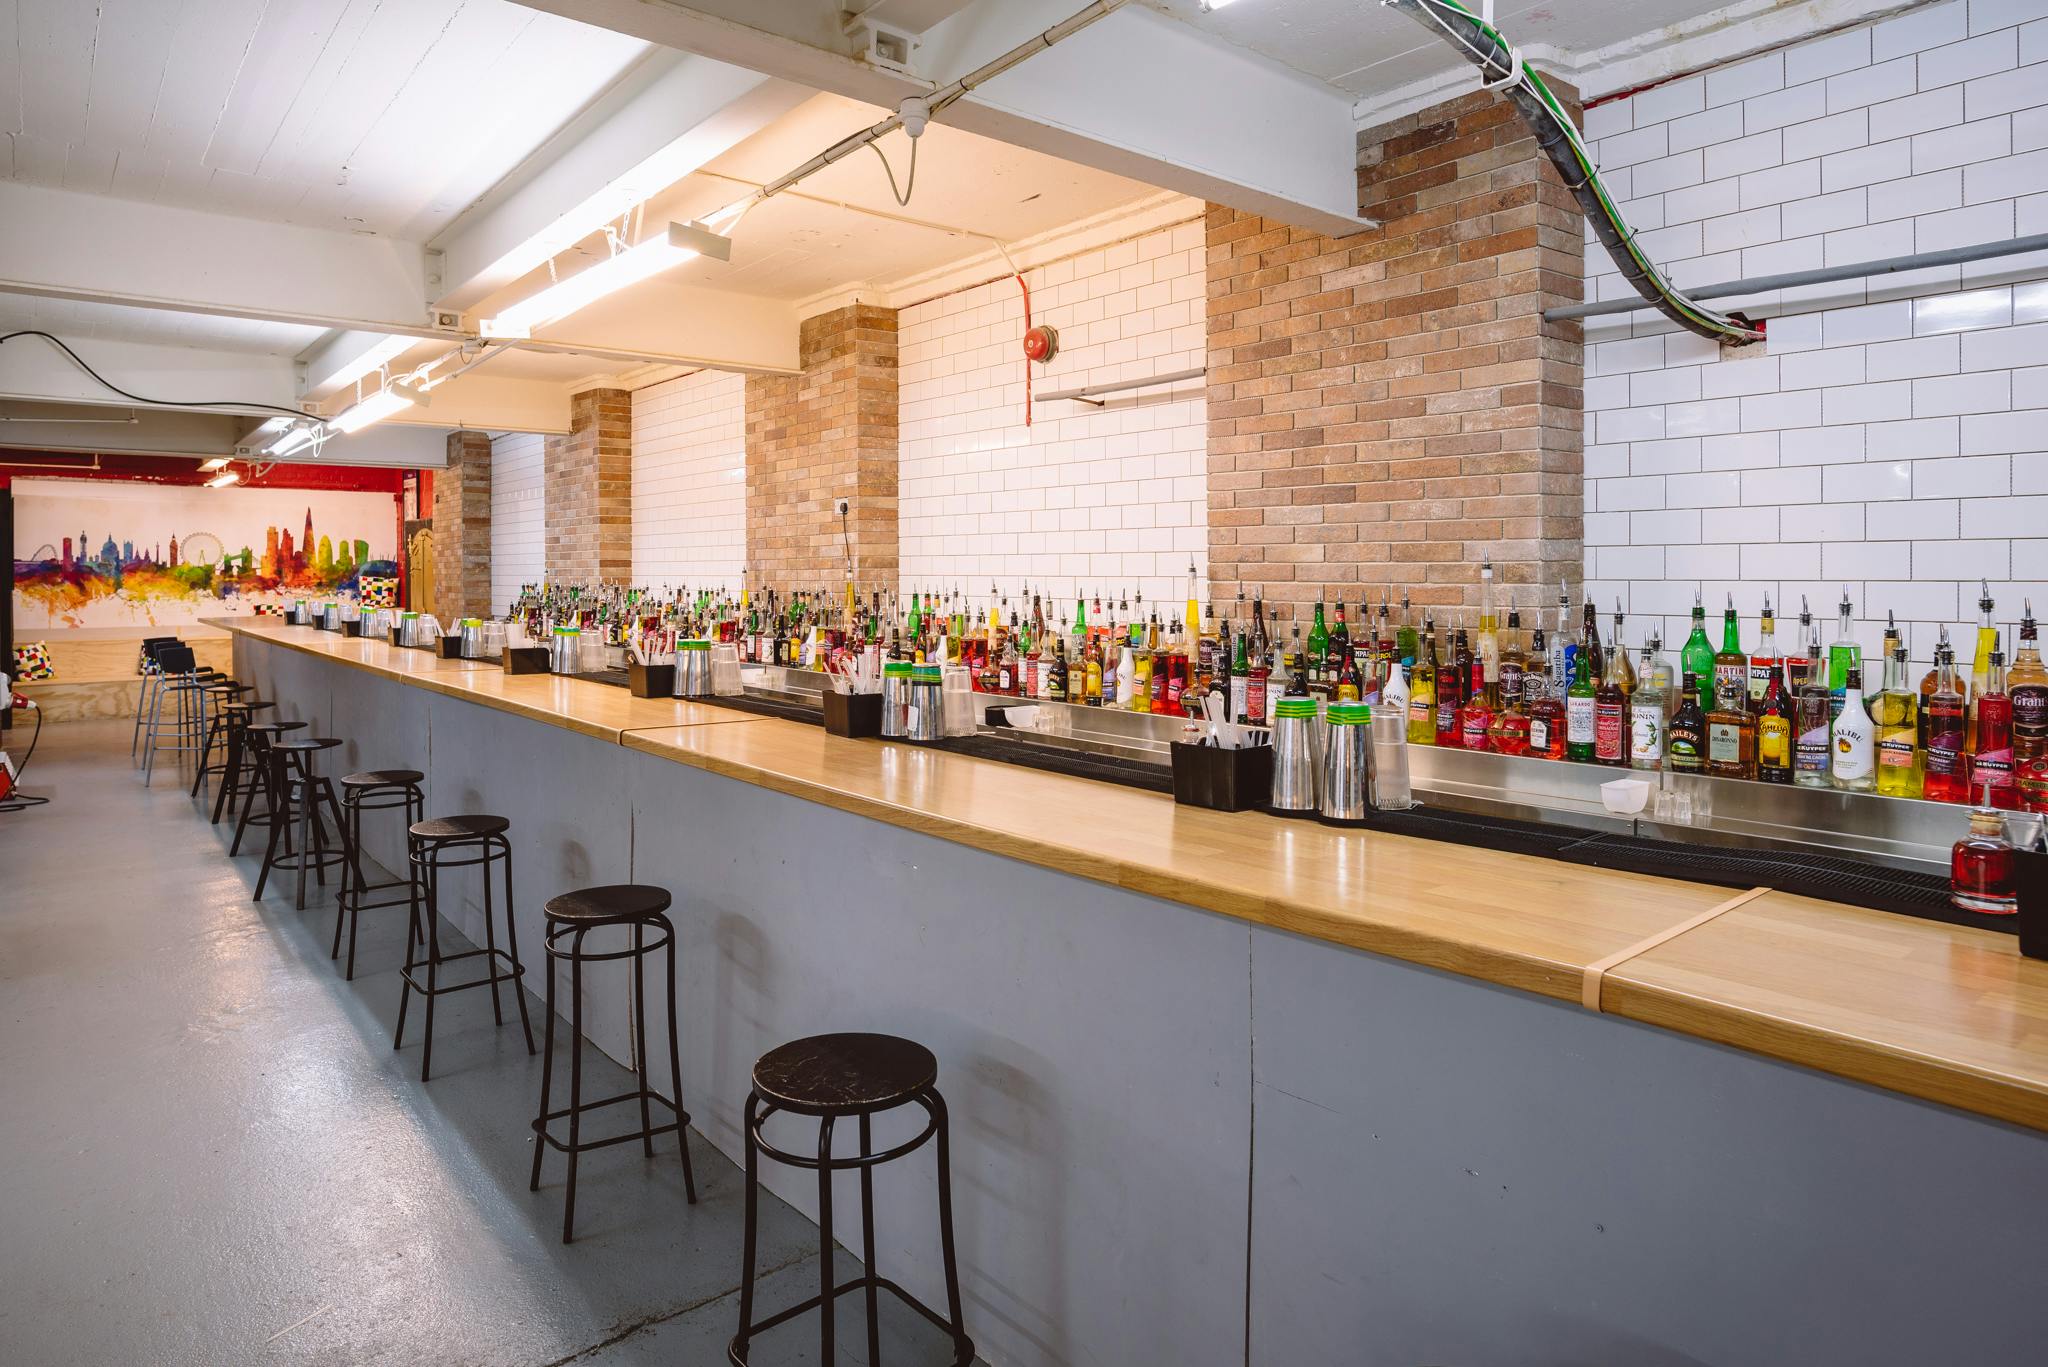 Corporate Team Building Venues - London Bartender School